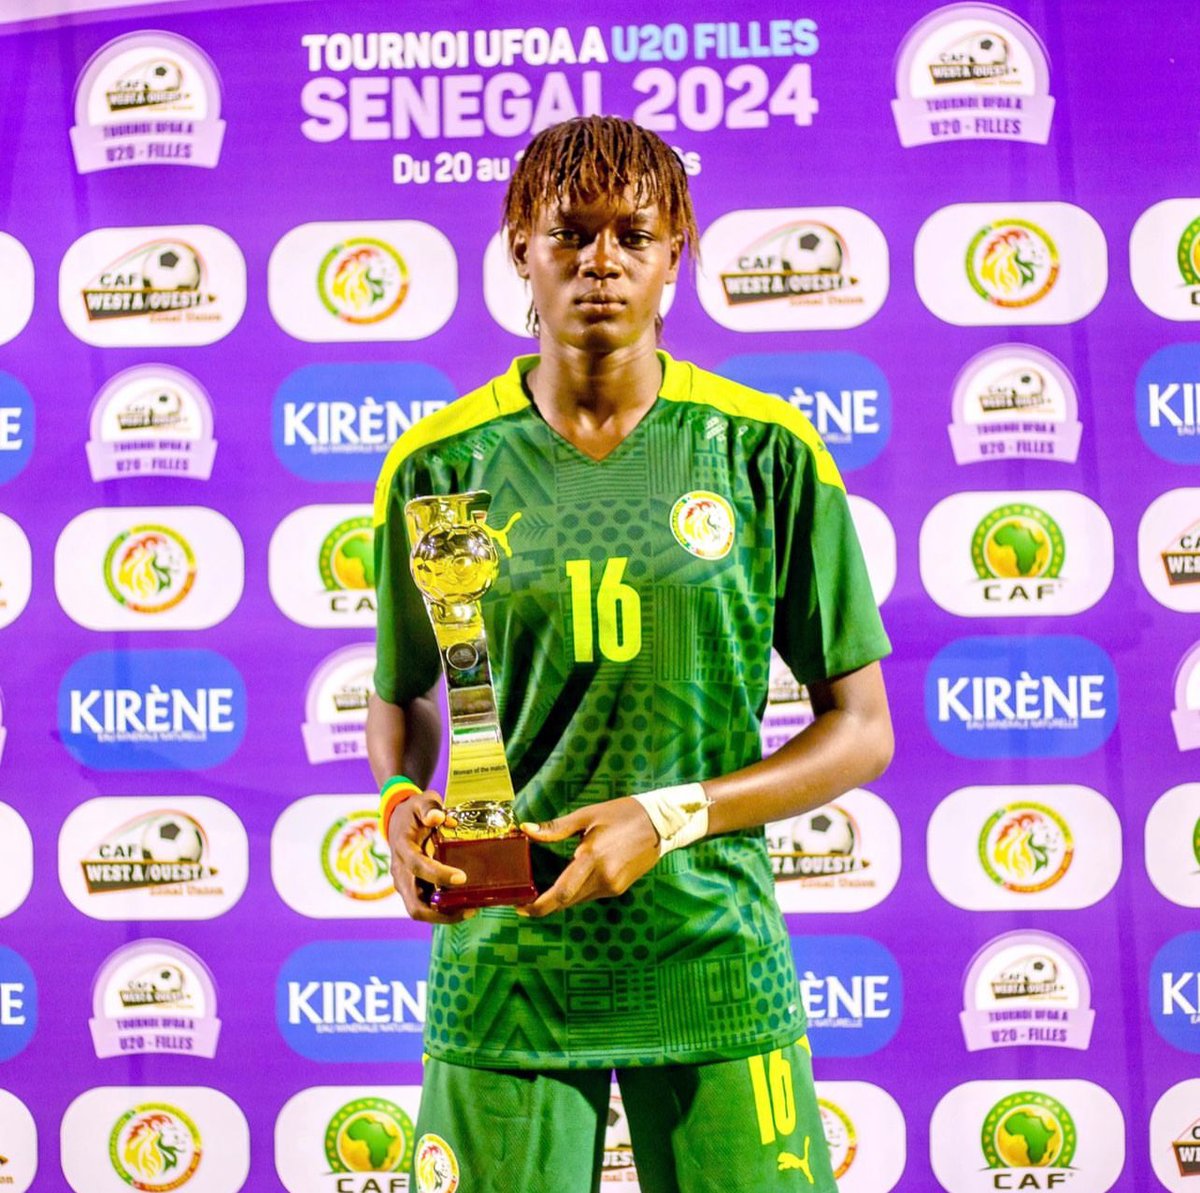 Notre attaquante Adji Ndiaye, élue femme du match contre la Guinée Bissau. #UFOAAU20👏🤩